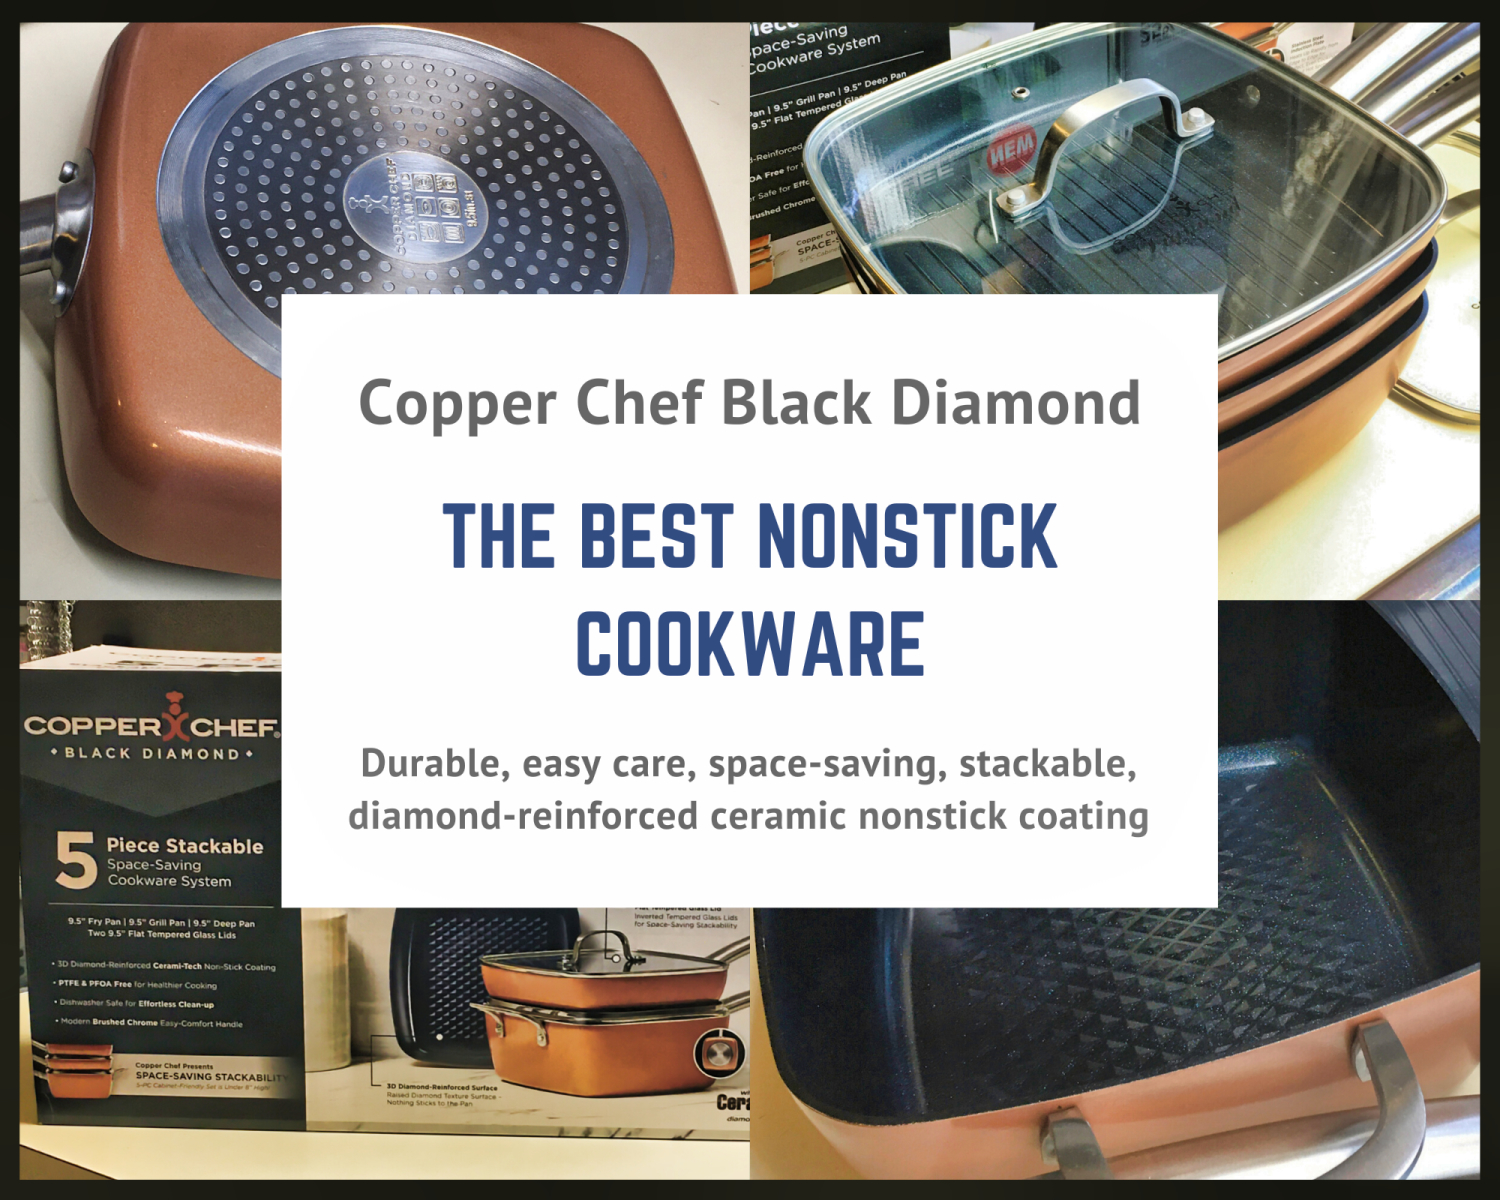 Copper Chef Black Diamond Nonstick Cookware Review